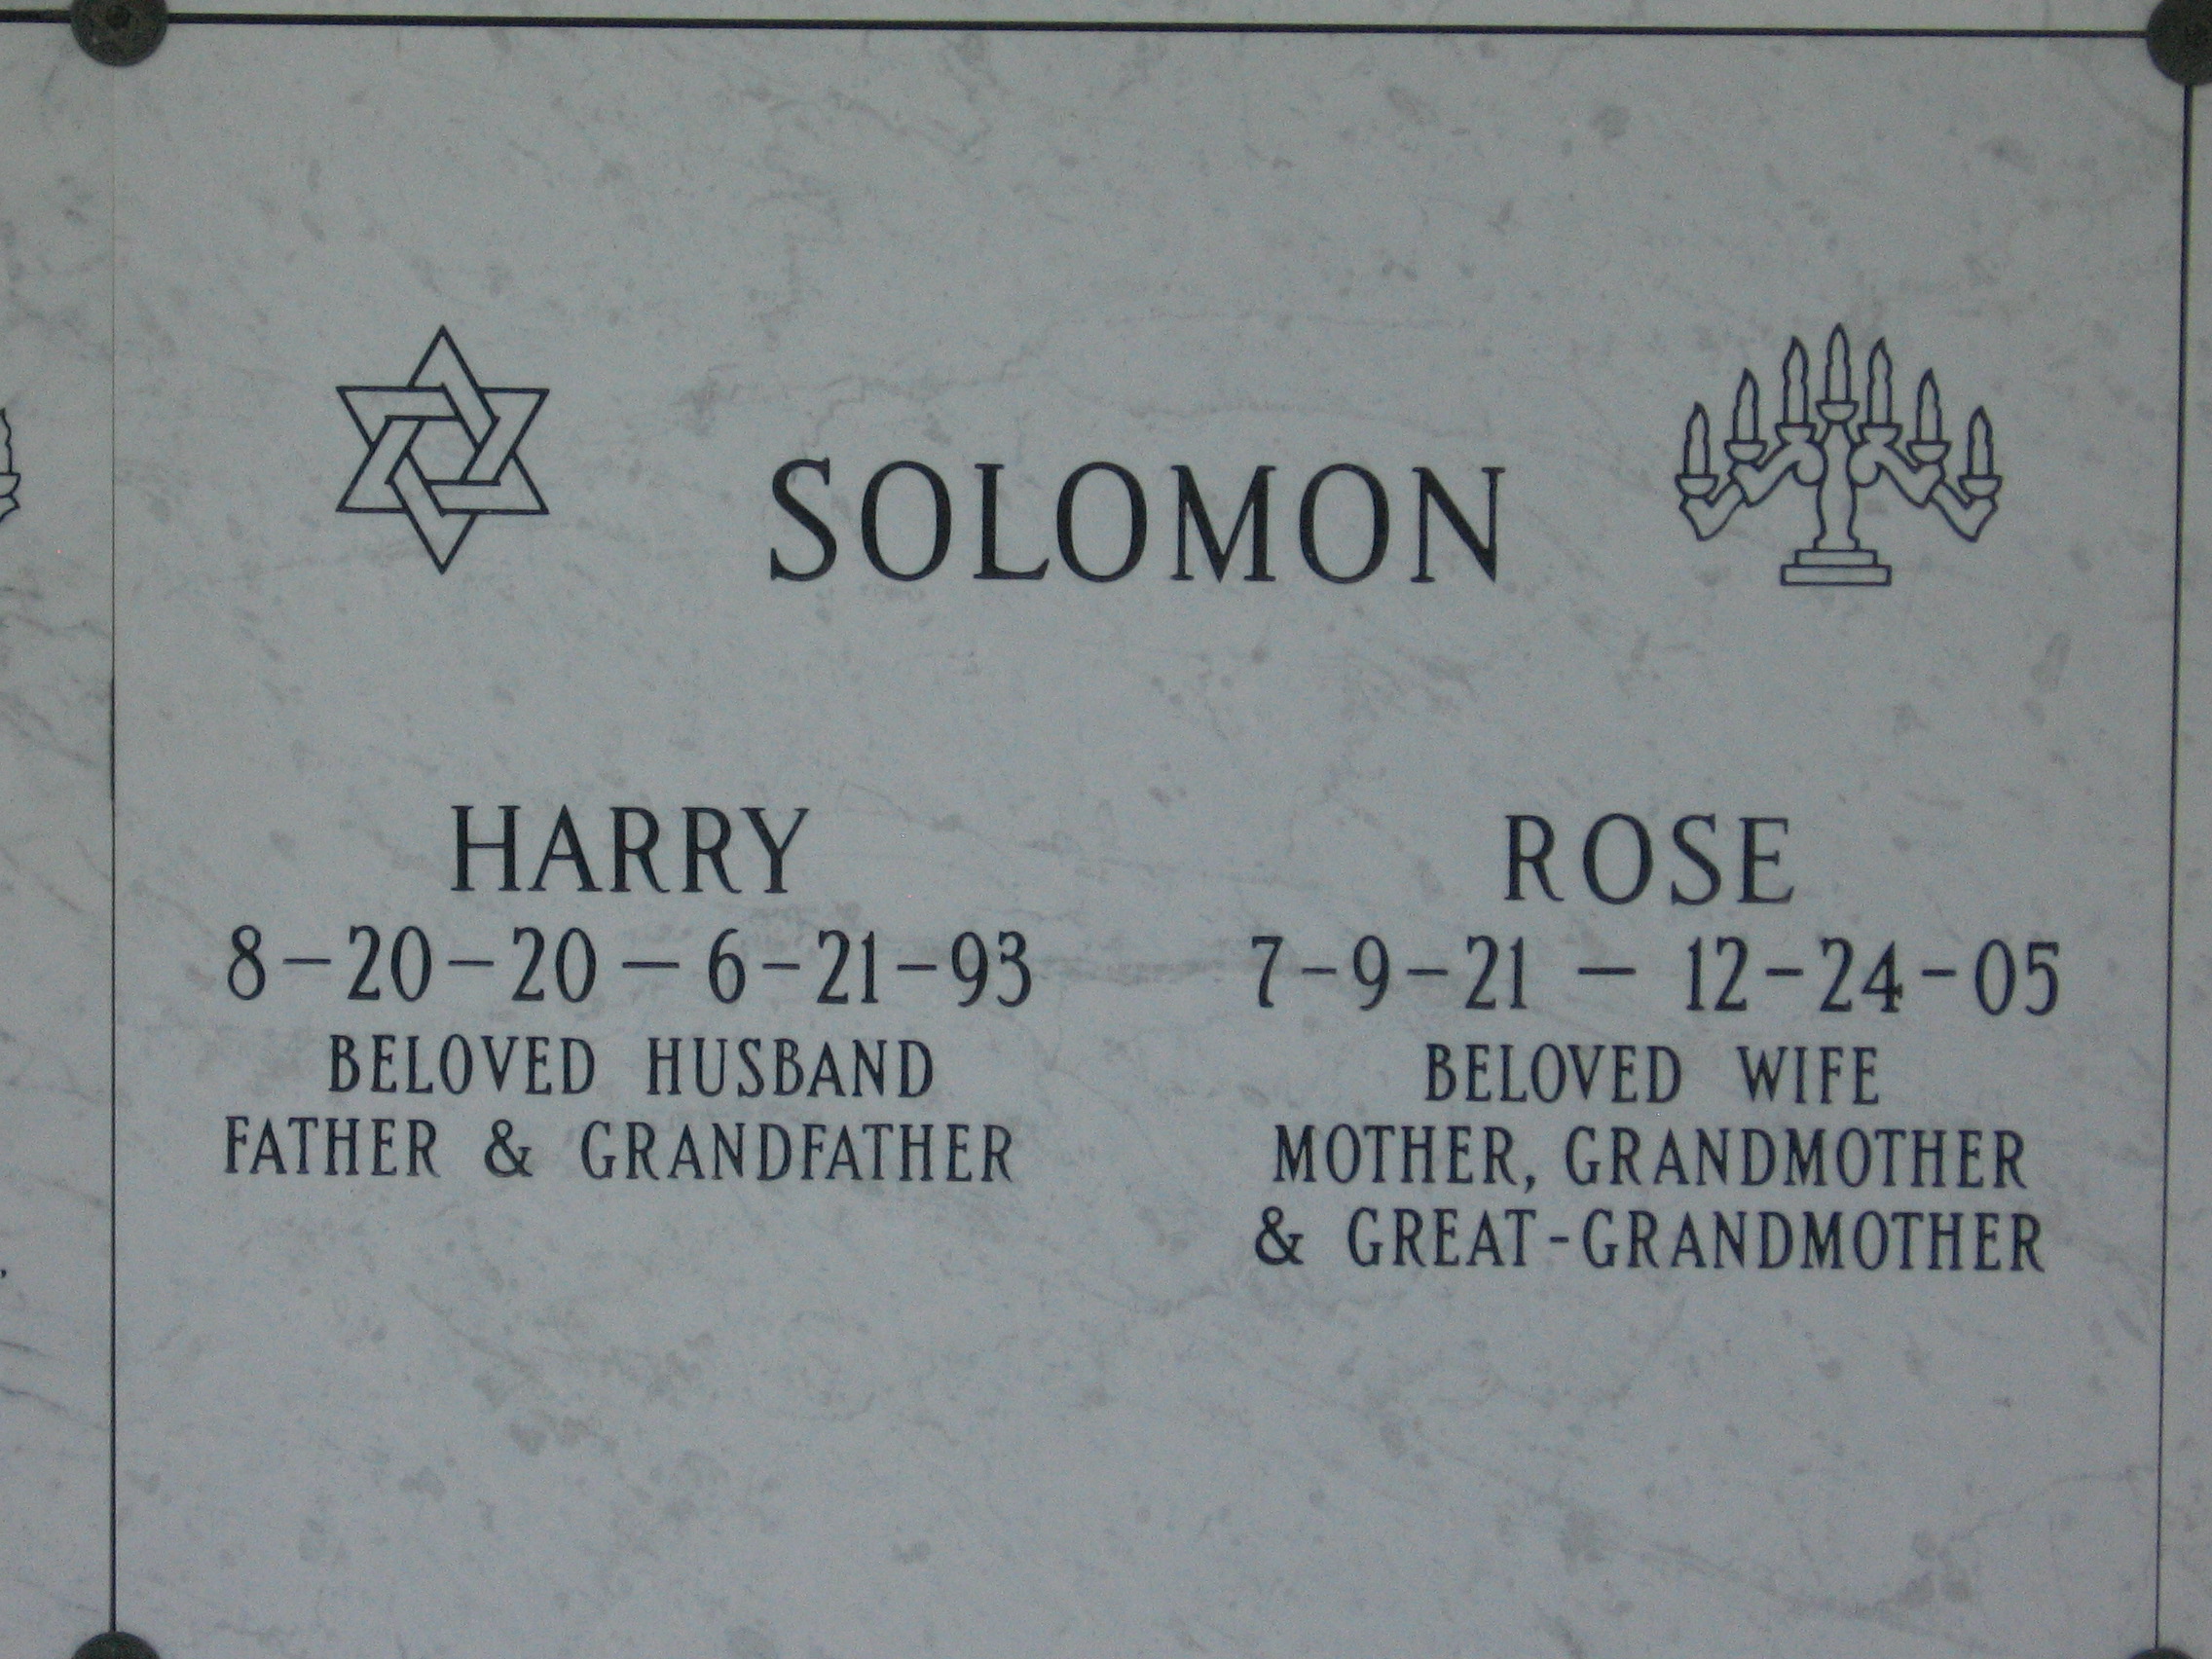 Rose Solomon